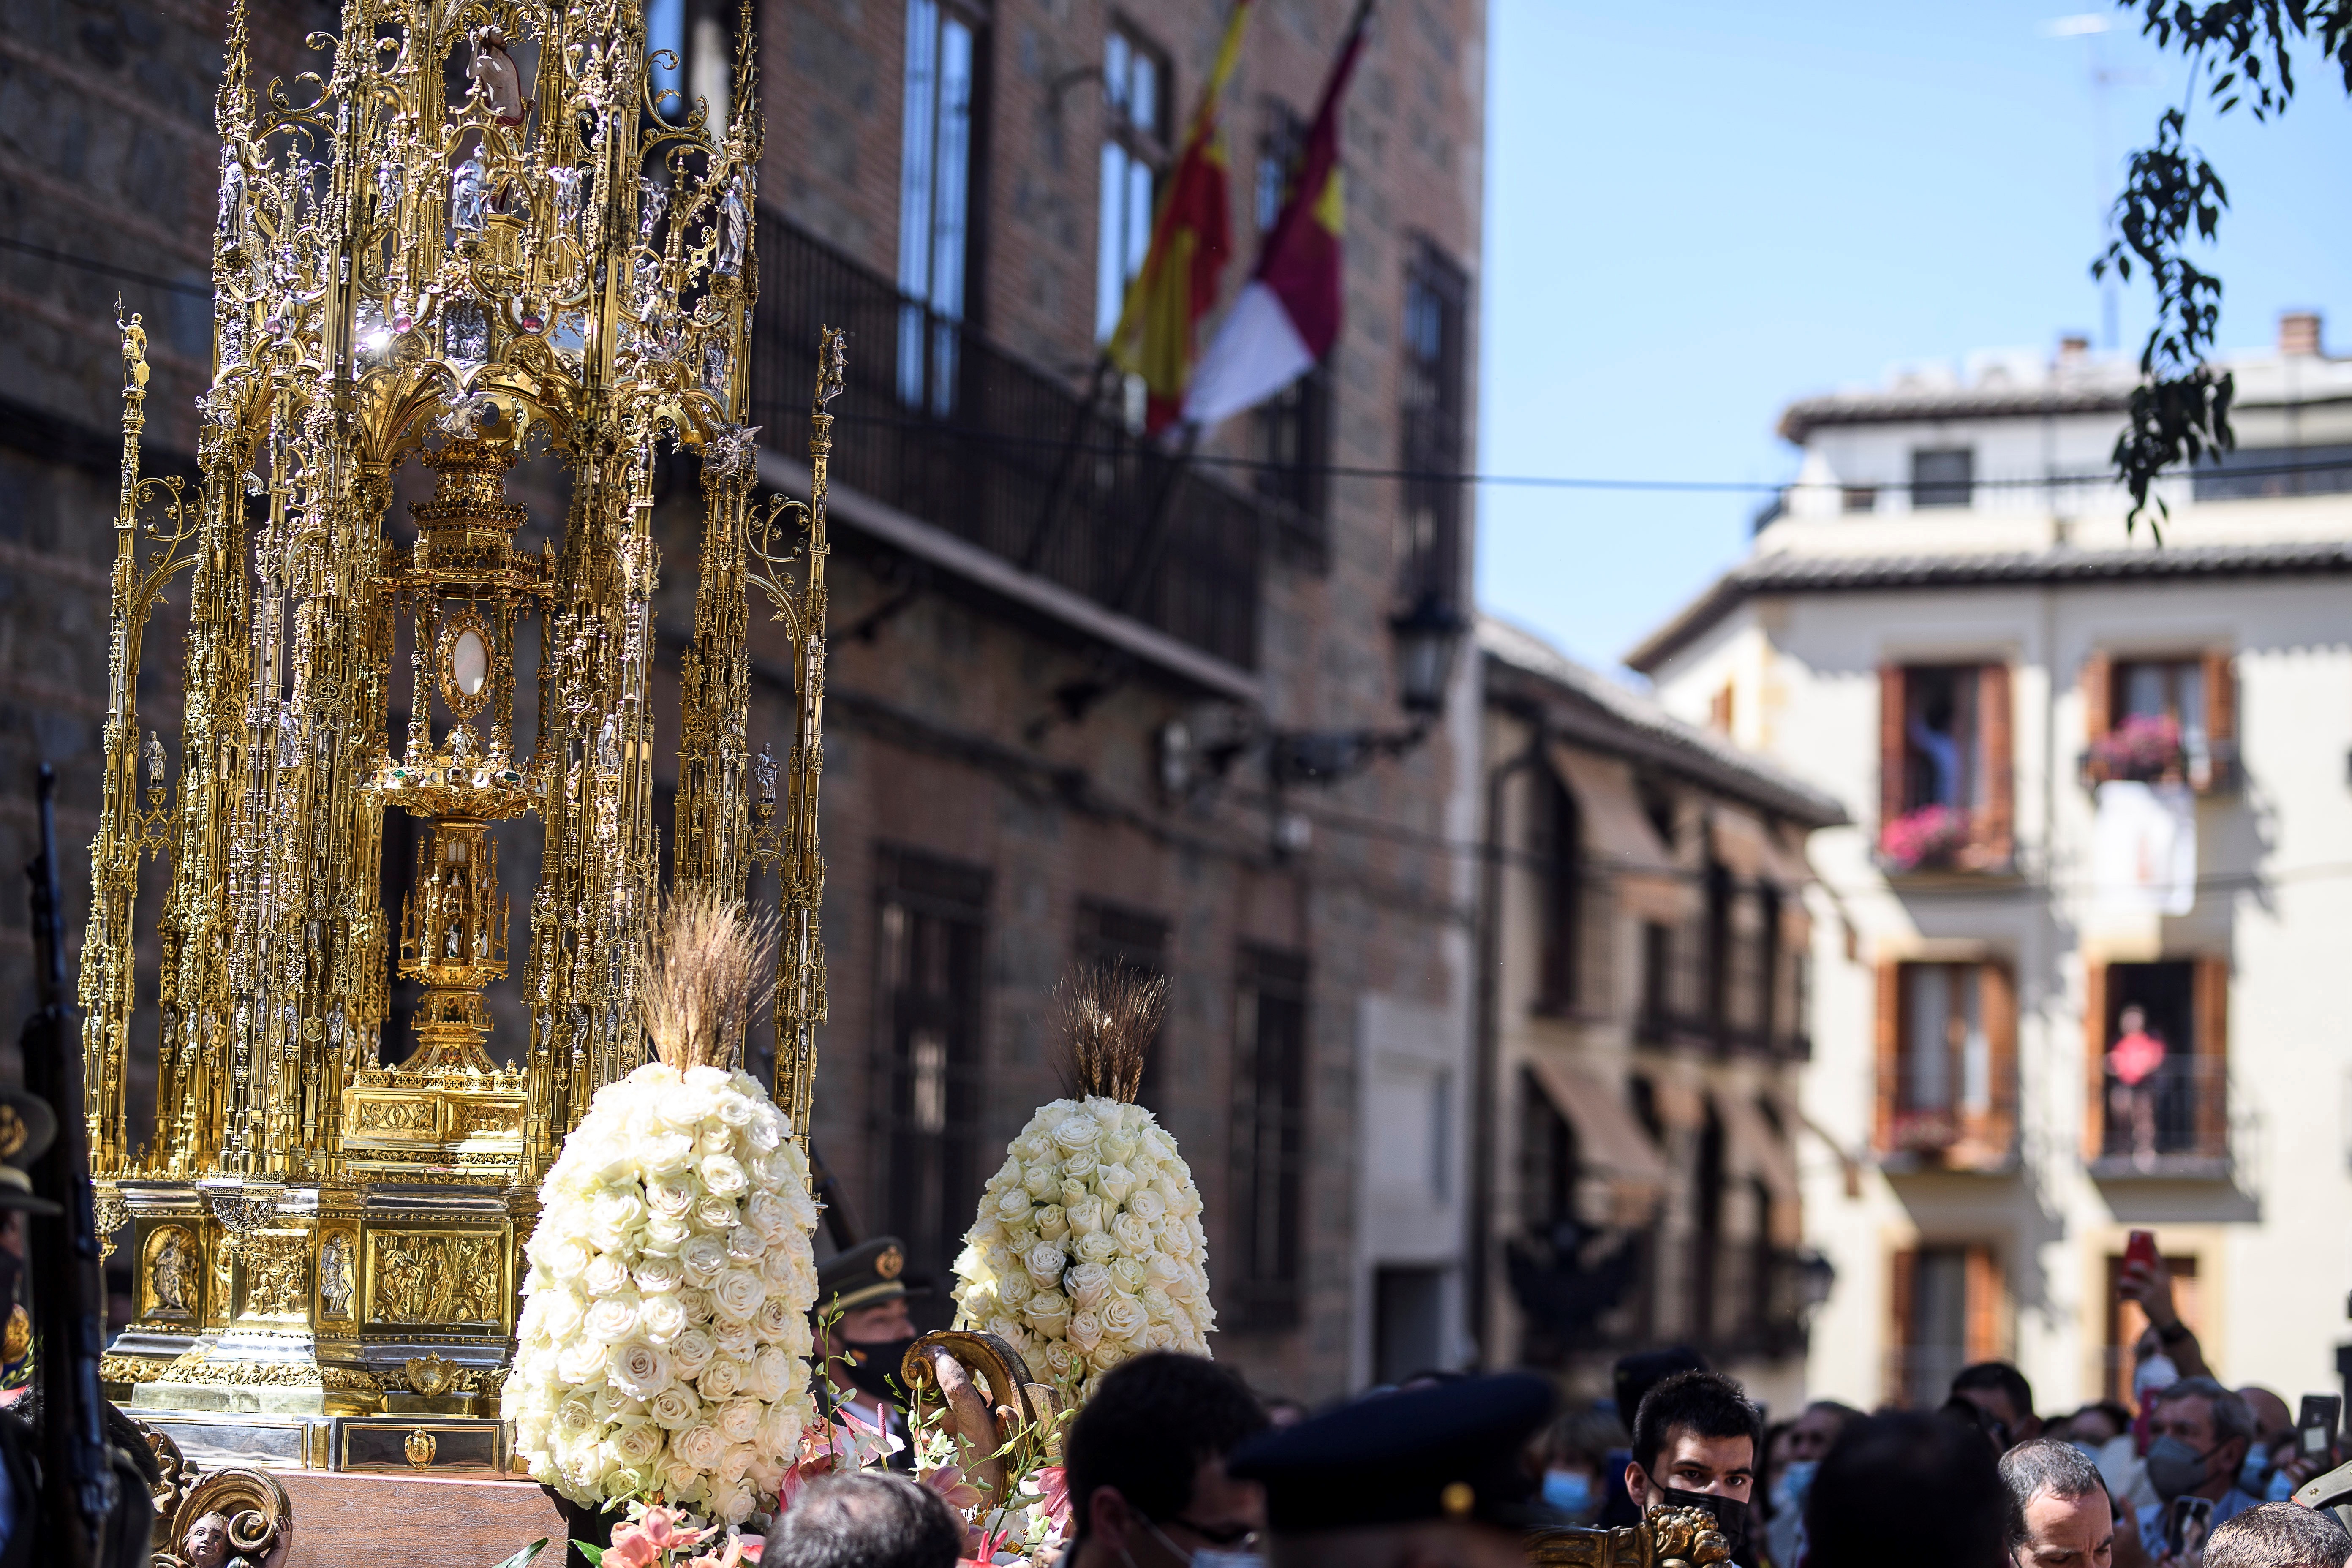 Emociones a flor de piel durante la festividad del Corpus en Toledo: Pido trabajo y que se acabe la pandemia